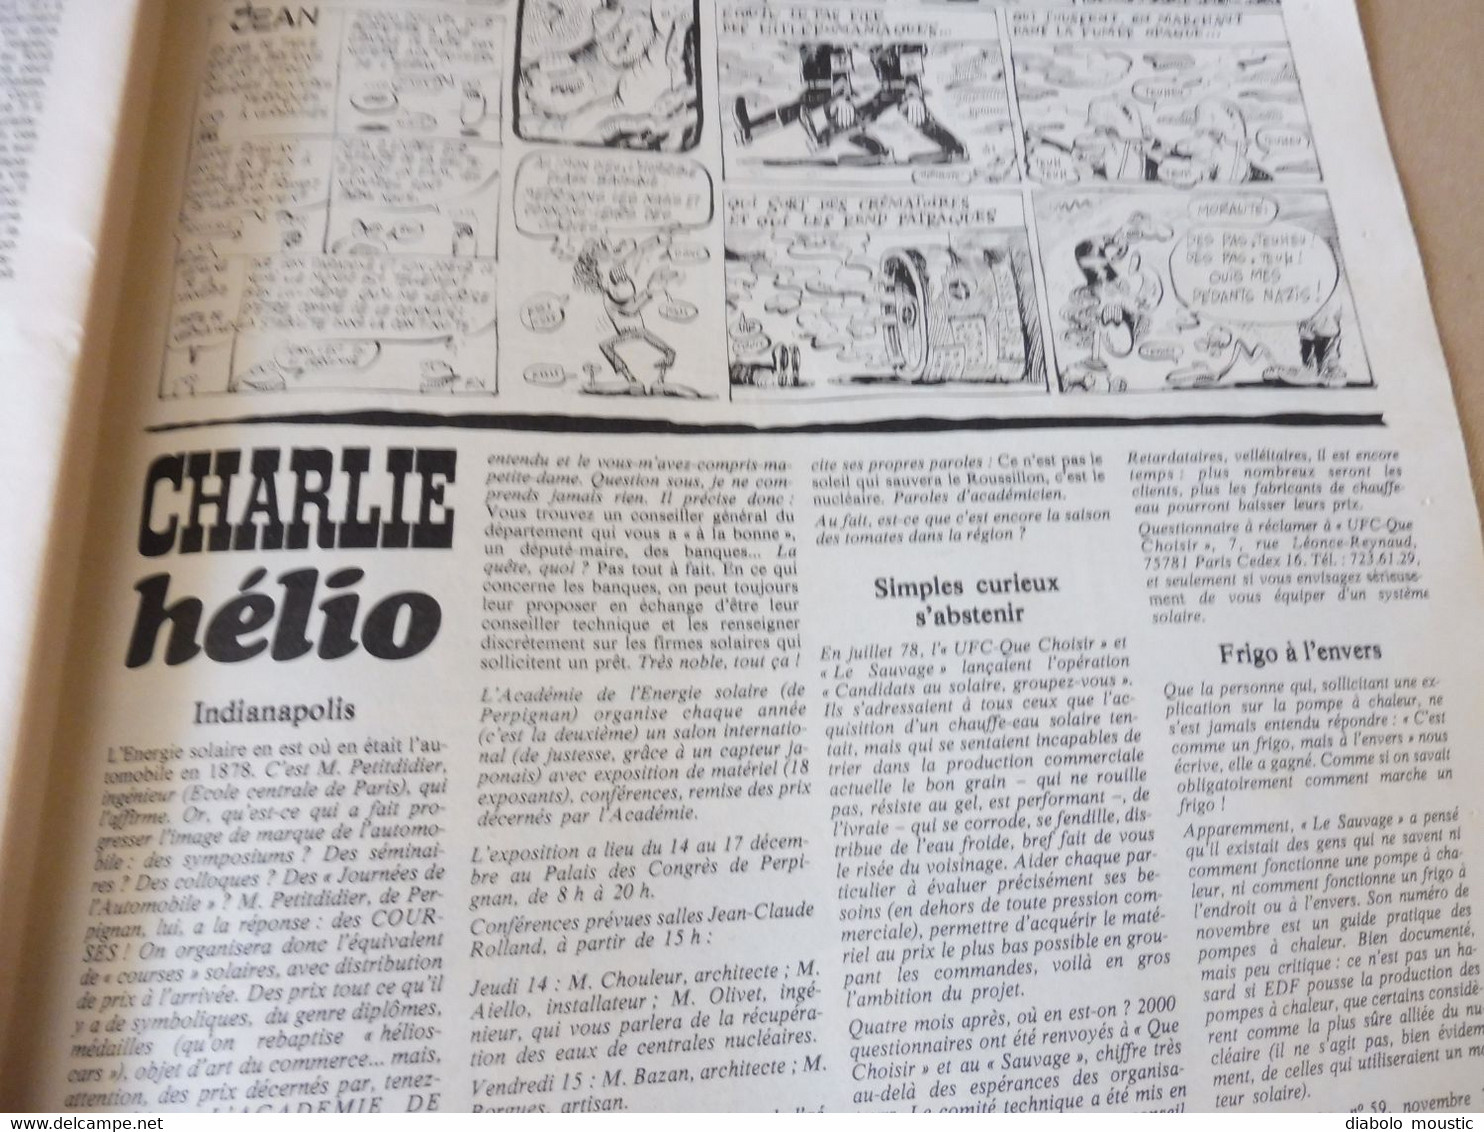 1978 CHARLIE HEBDO  :  Anufrance ; "Détective" et la débauche nationale; Faut aimer, etc